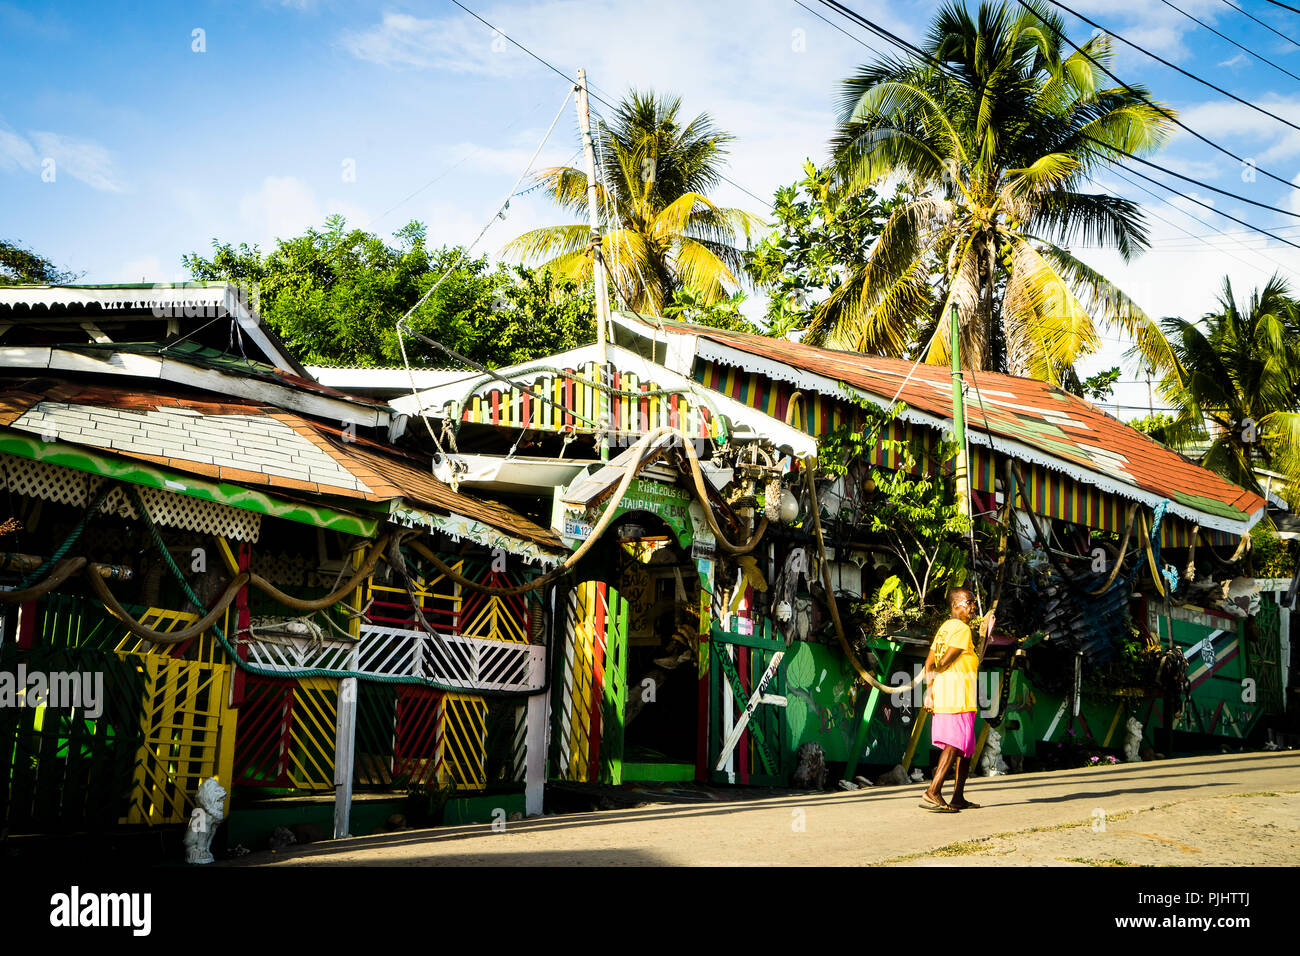 Una mujer delante de un restaurante rasta, Salina Bay, Mayreau, San Vicente y las Granadinas, West Indies Foto de stock